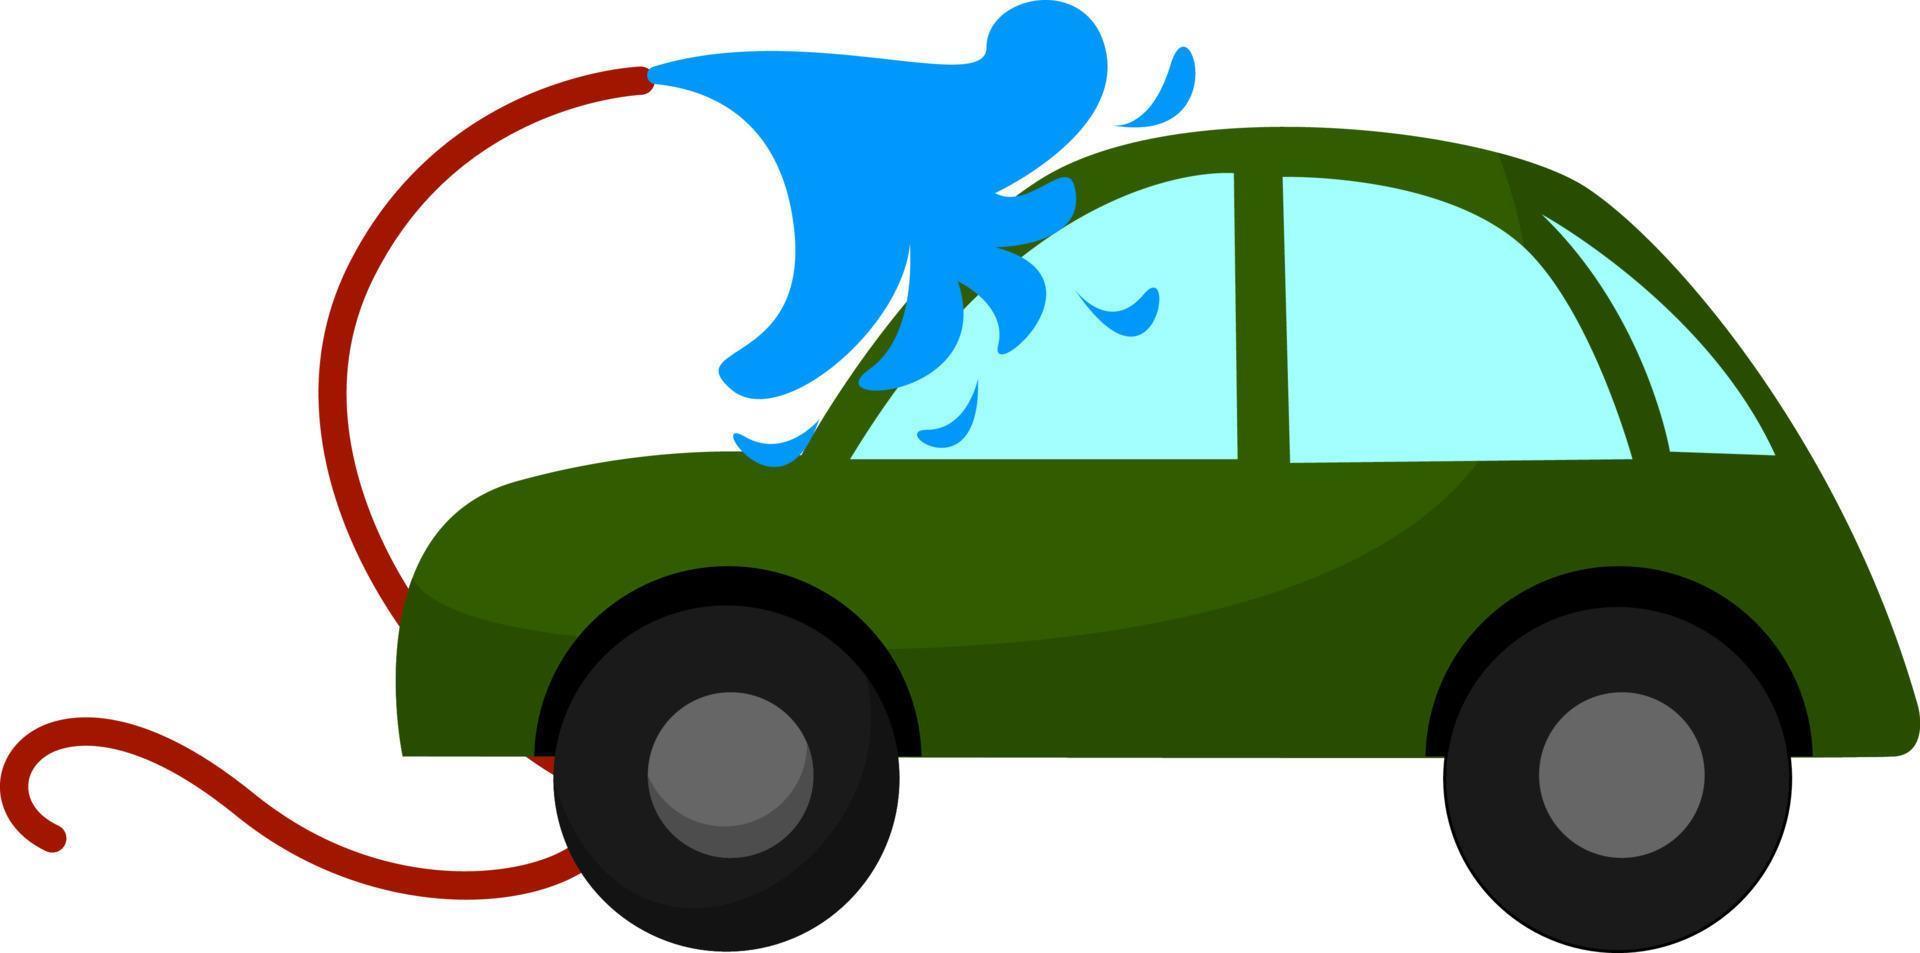 Car washing, illustration, vector on white background.